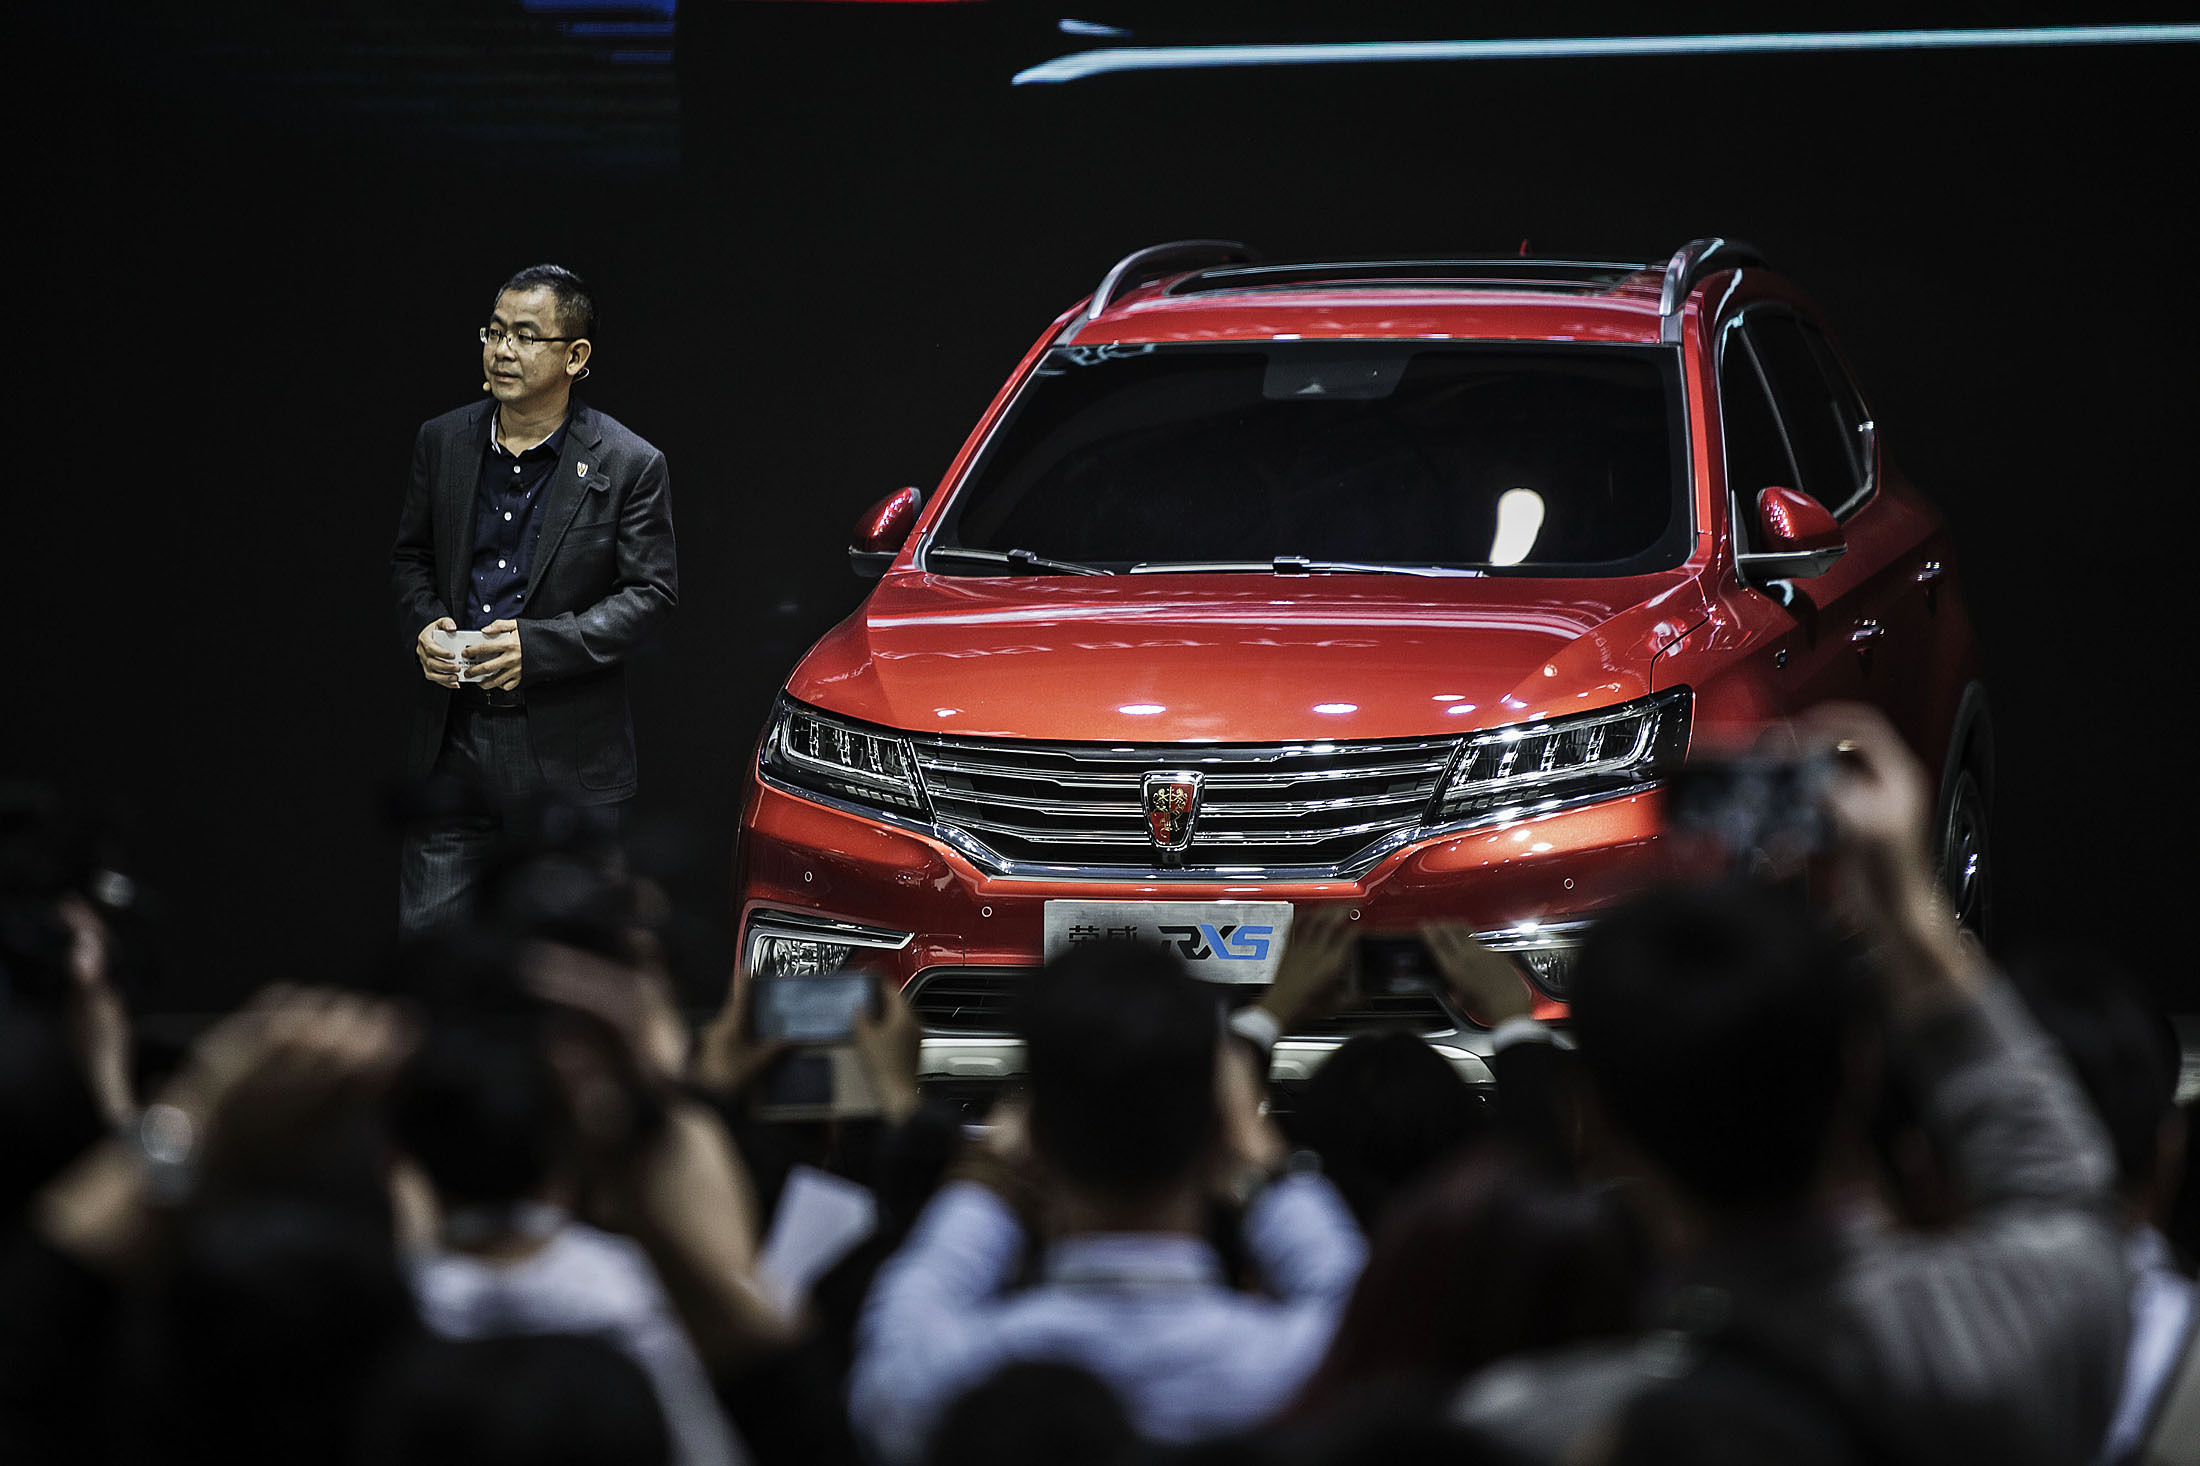 
SAIC Motor, đối tác của hãng Alibaba, đã tích hợp công nghệ Internet vào các mẫu xe của mình như Roewe ERX5.
